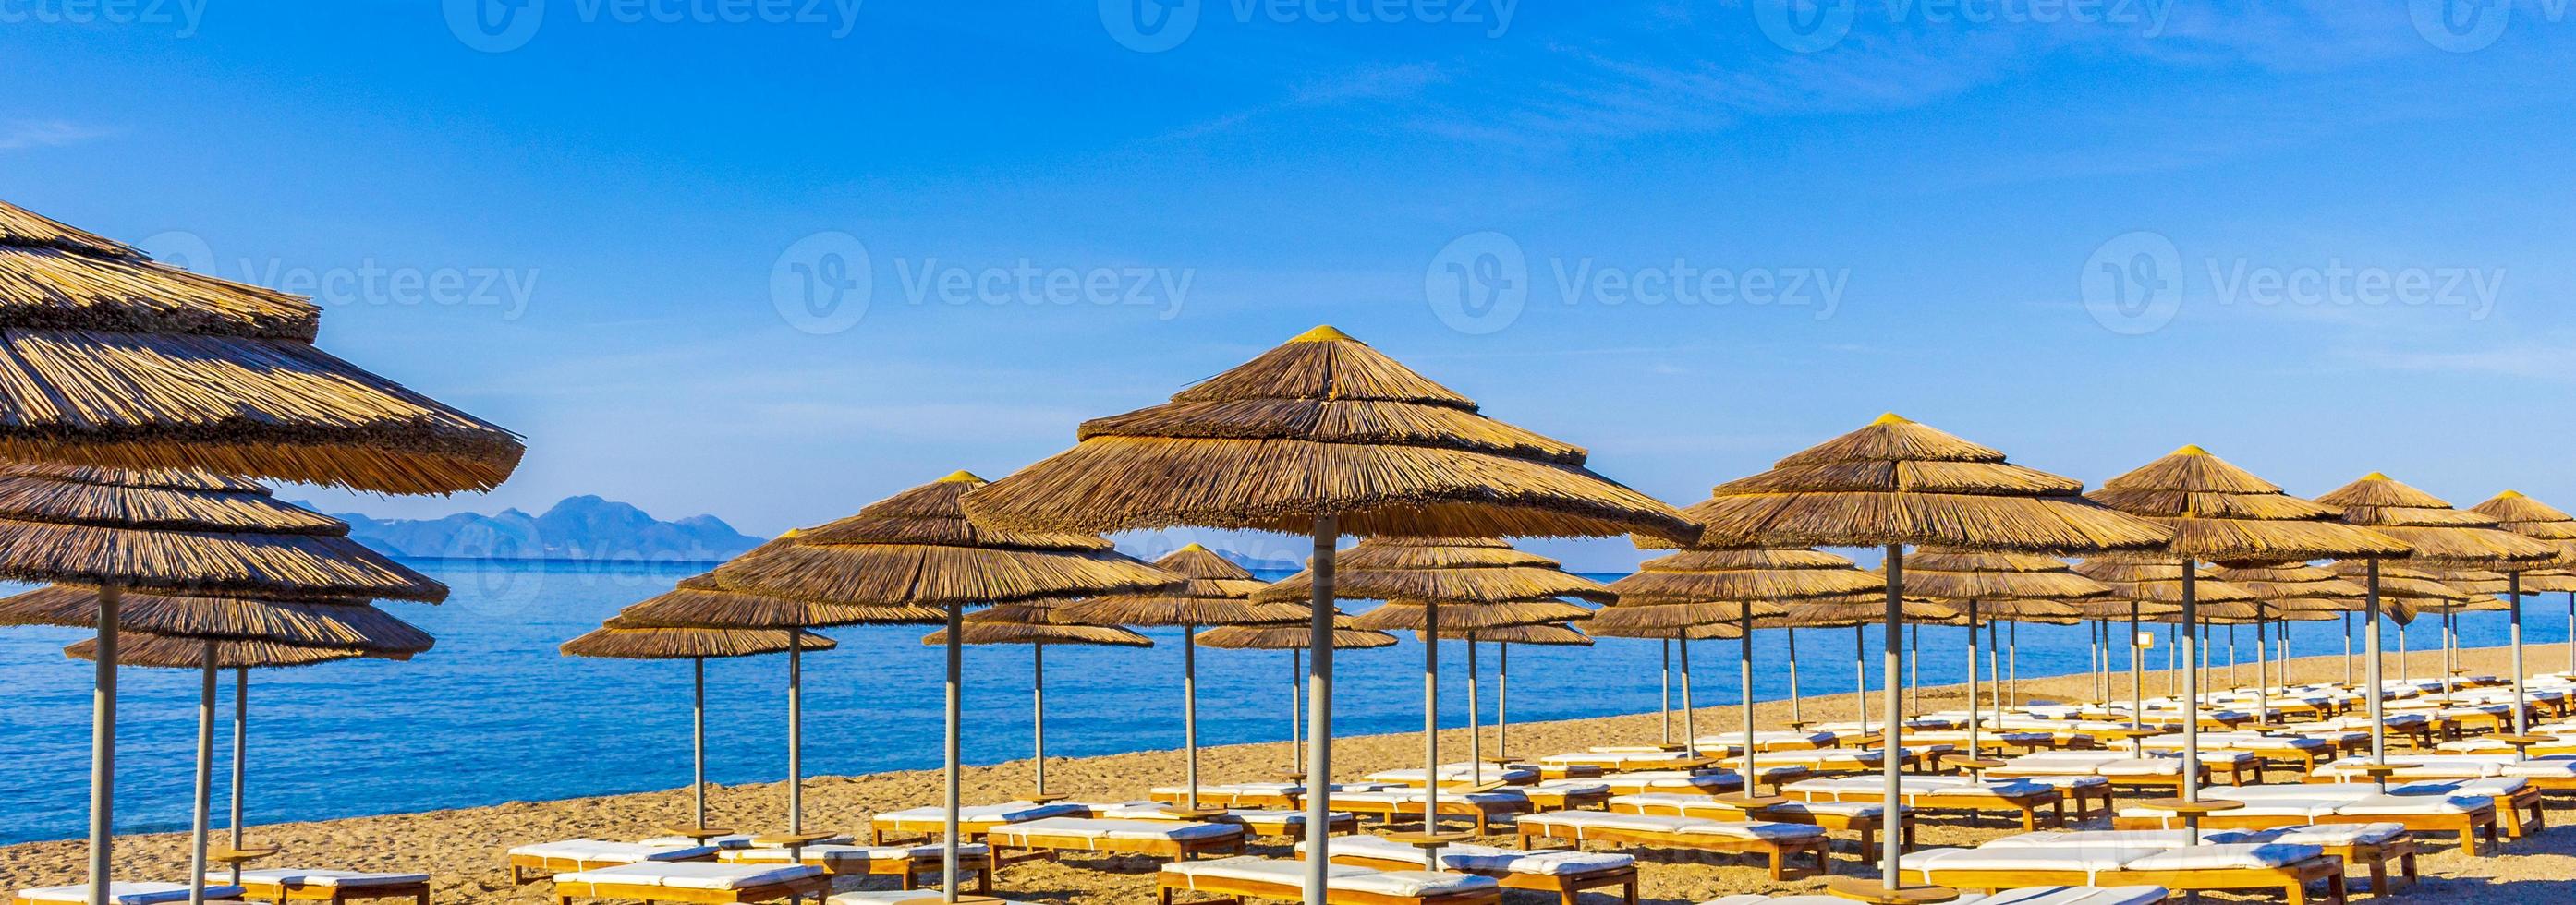 ligstoelen en parasols op het strand kos eiland griekenland. foto